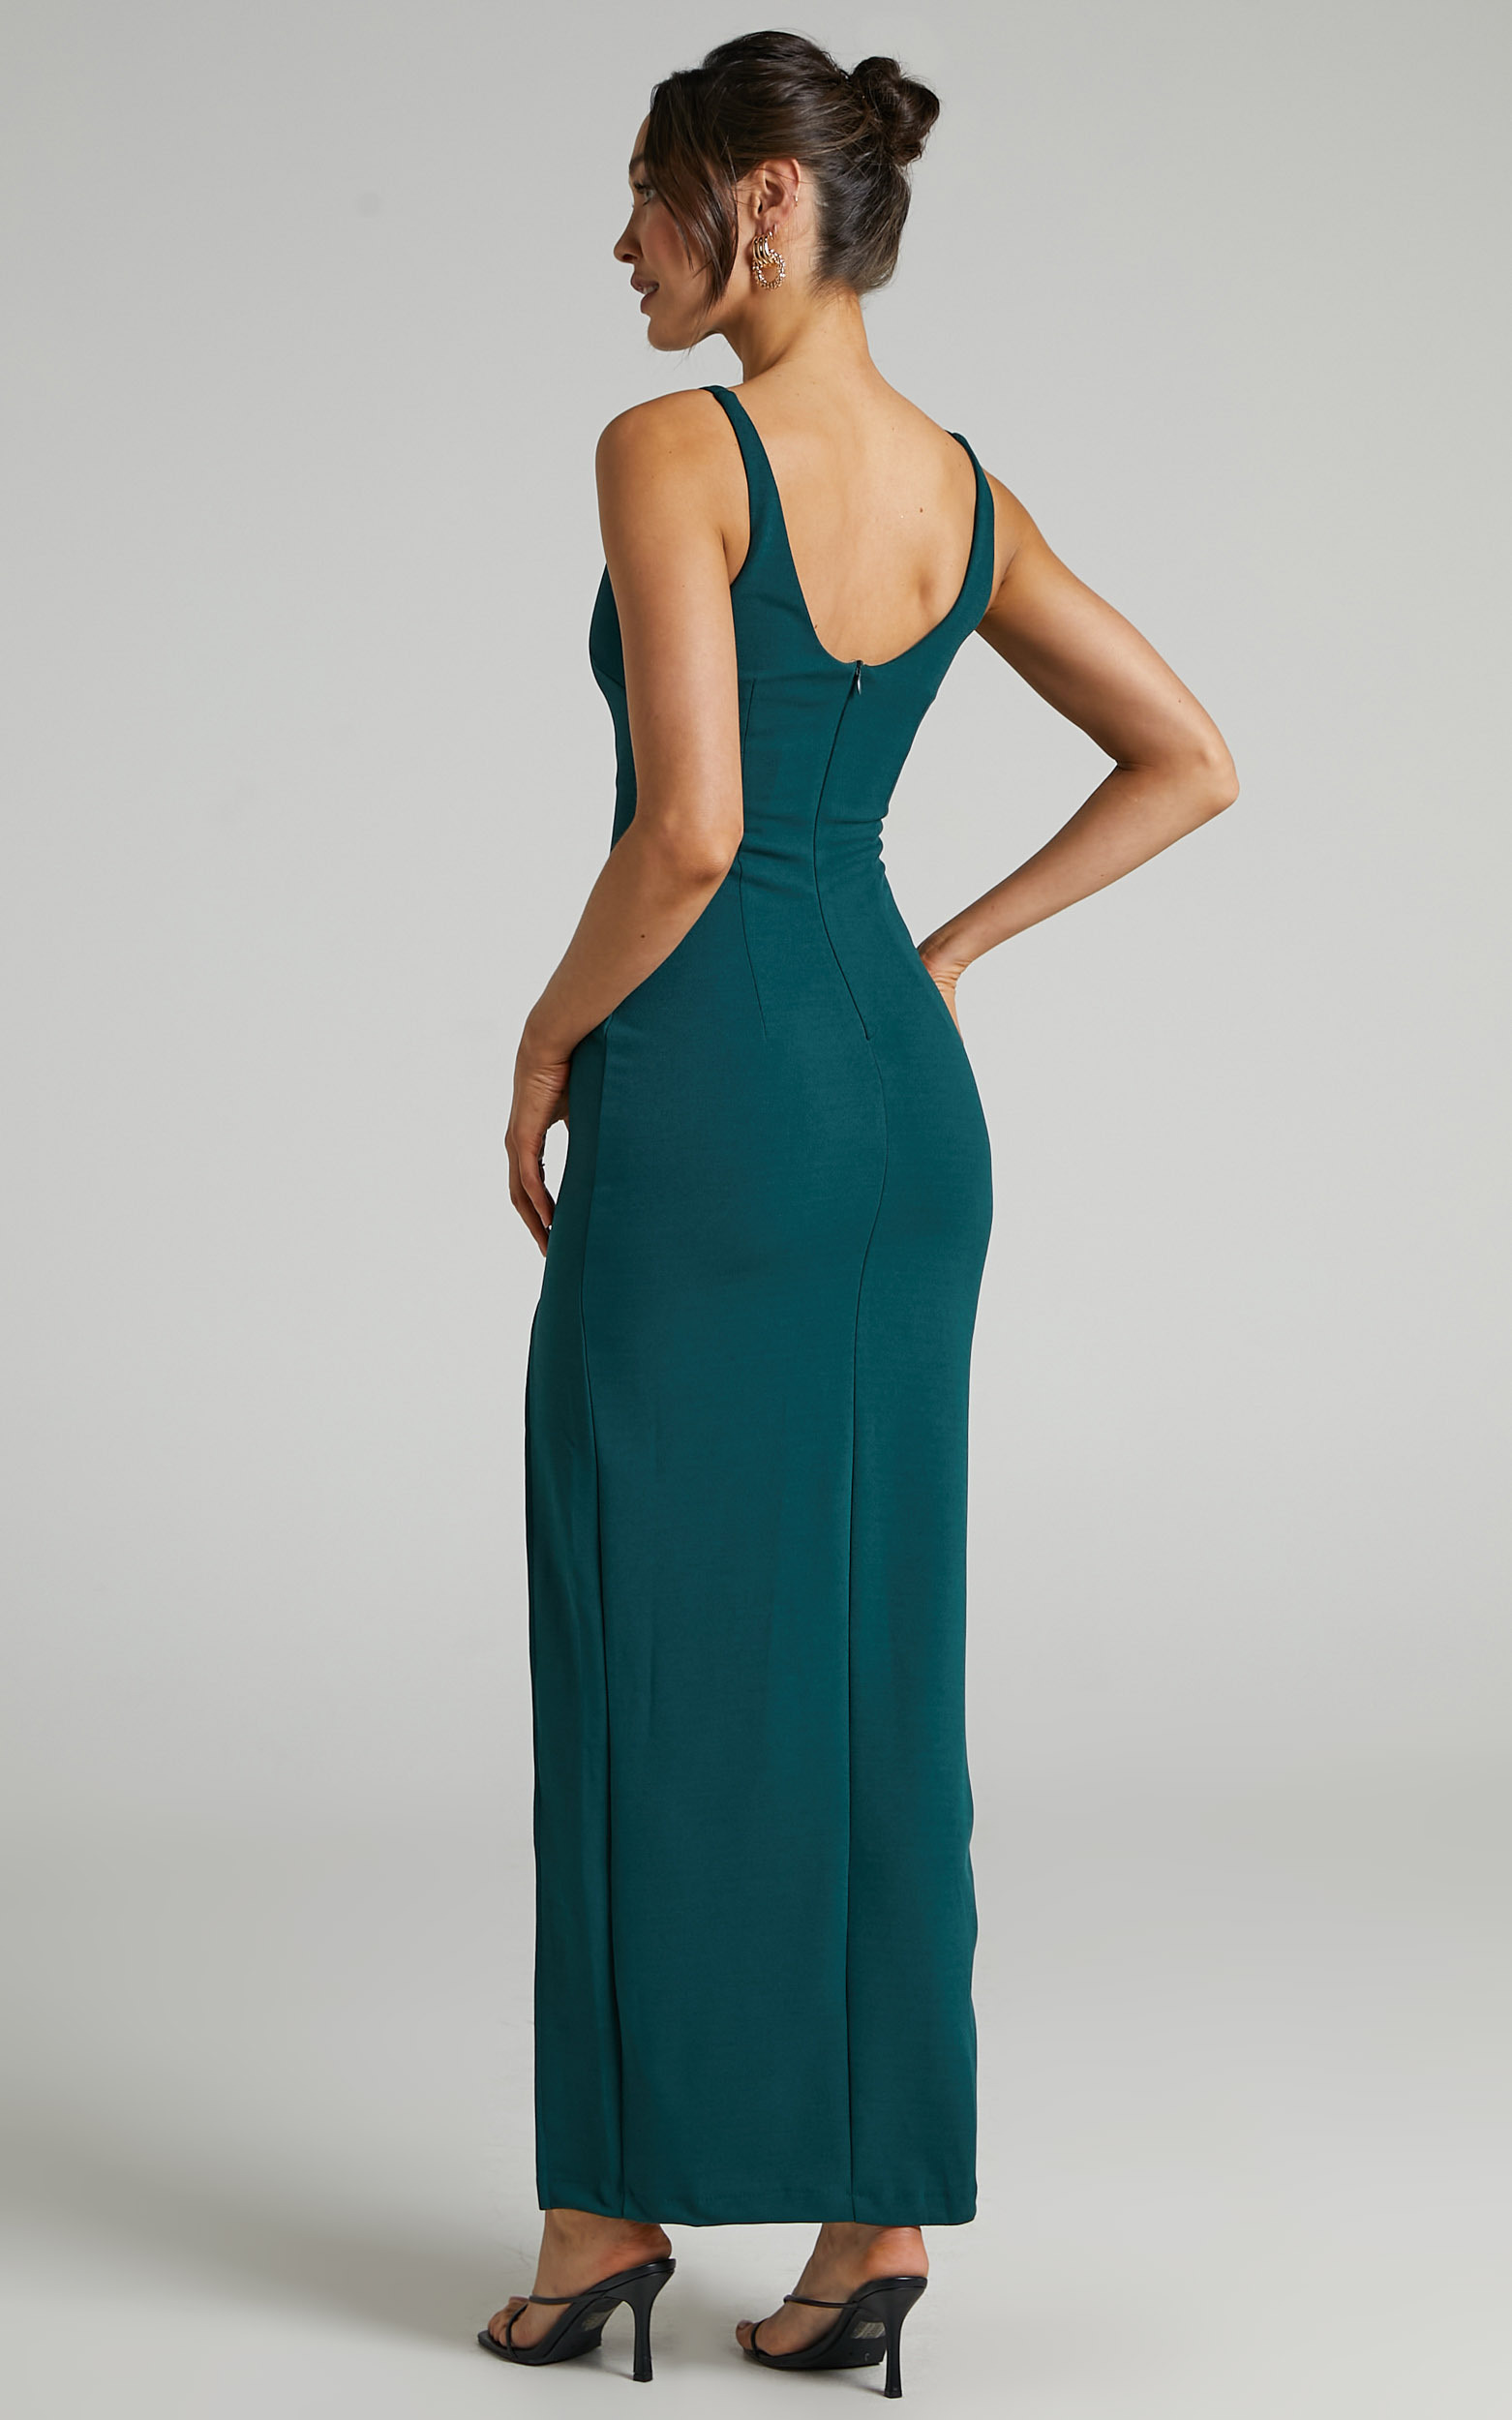 Indi Boat Neck Bodycon Maxi Dress in Emerald | Showpo USA